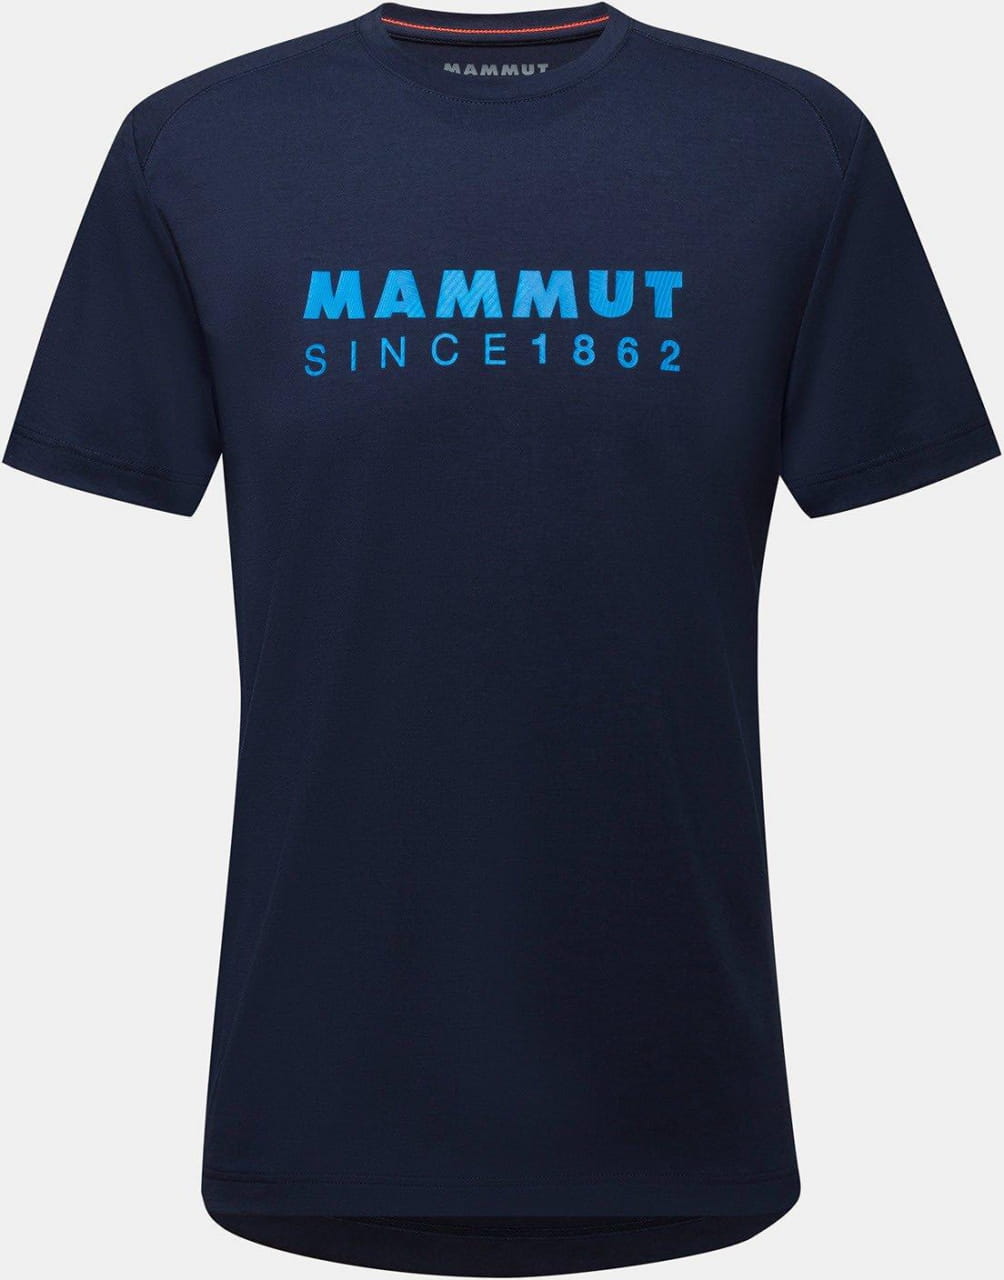 Sporthemd für Männer Mammut Trovat T-Shirt